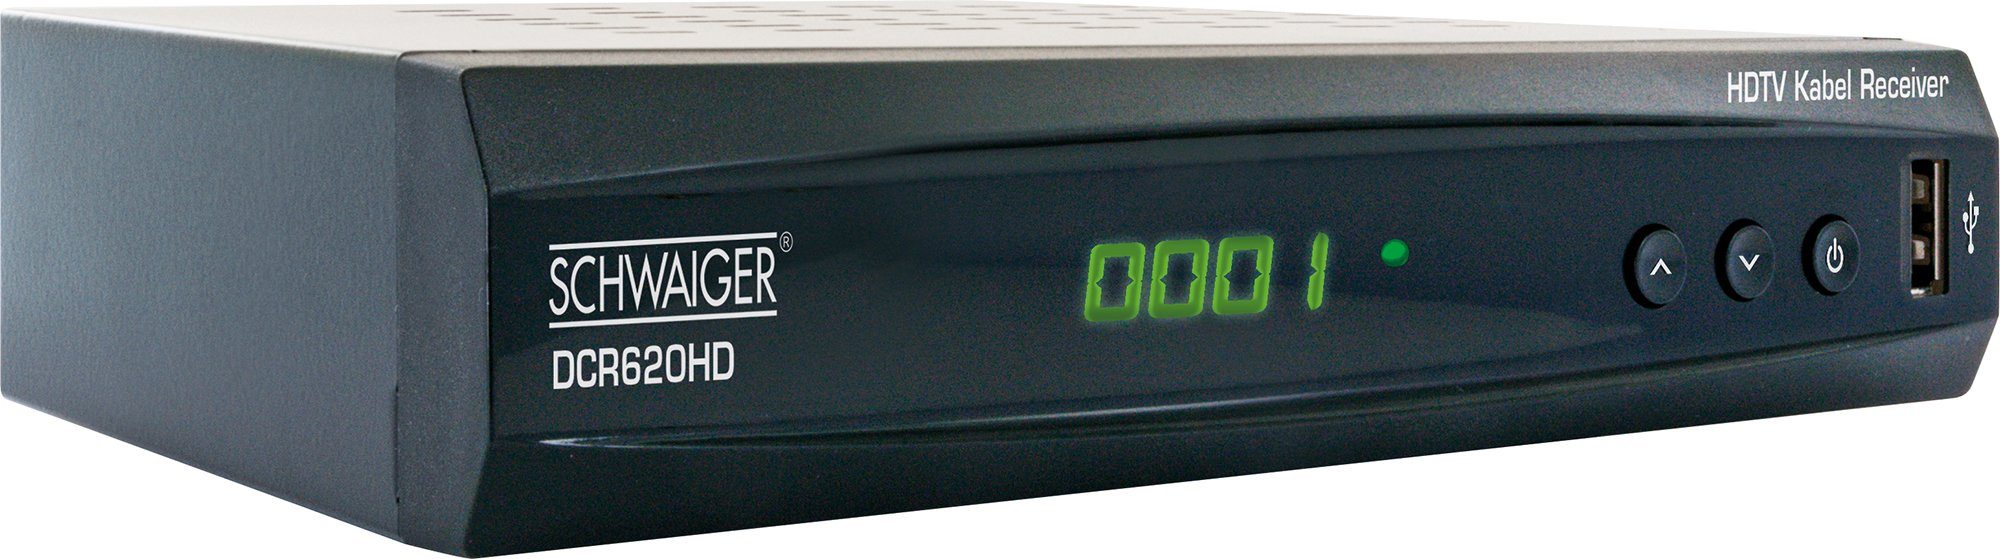 (Eingebauter Mediaplayer) Kabel-Receiver DCR620HD Schwaiger